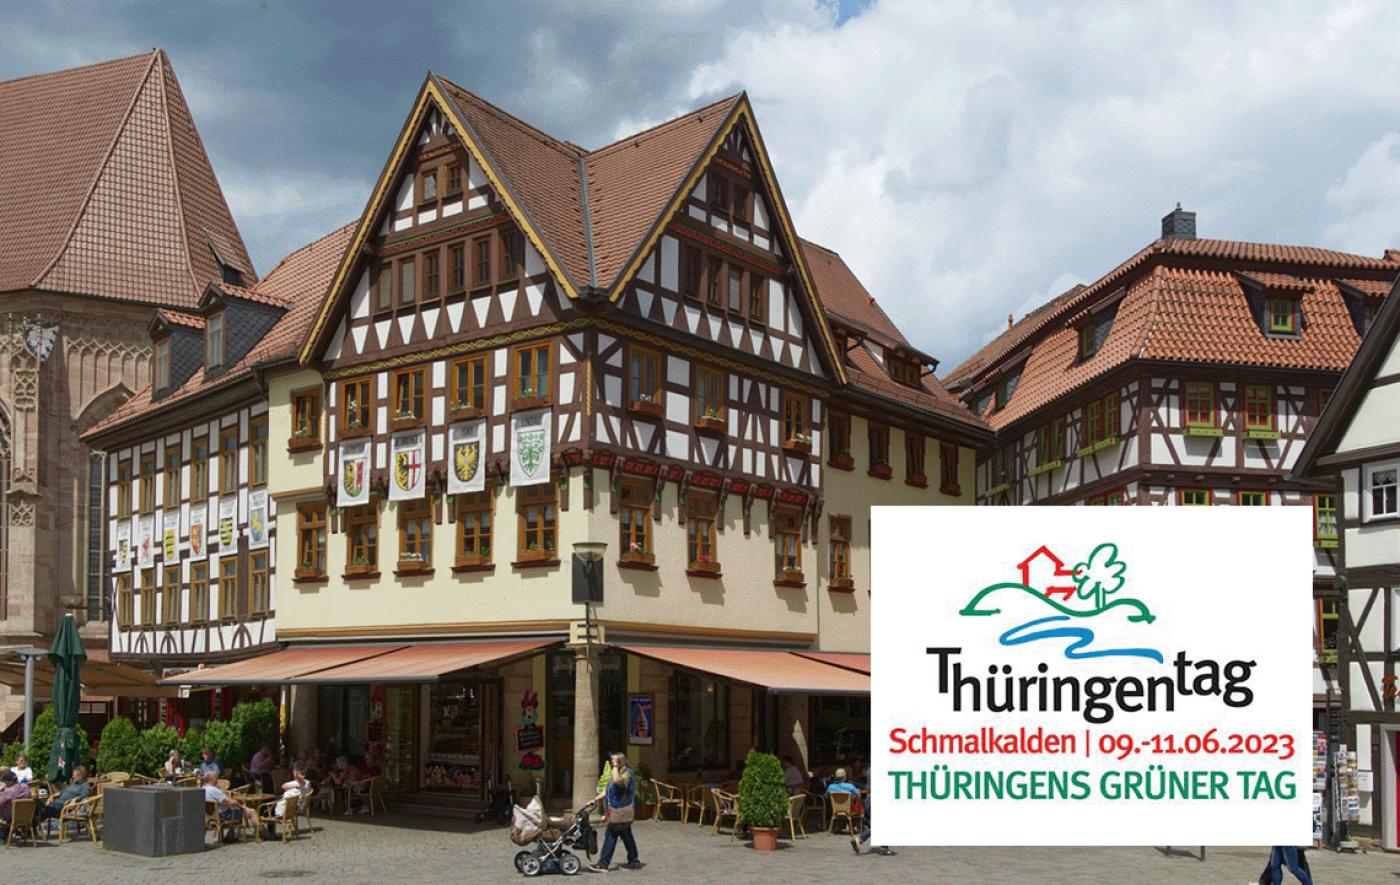 Thüringentag 2023 – „Thüringens grüner Tag“ in Schmalkalden